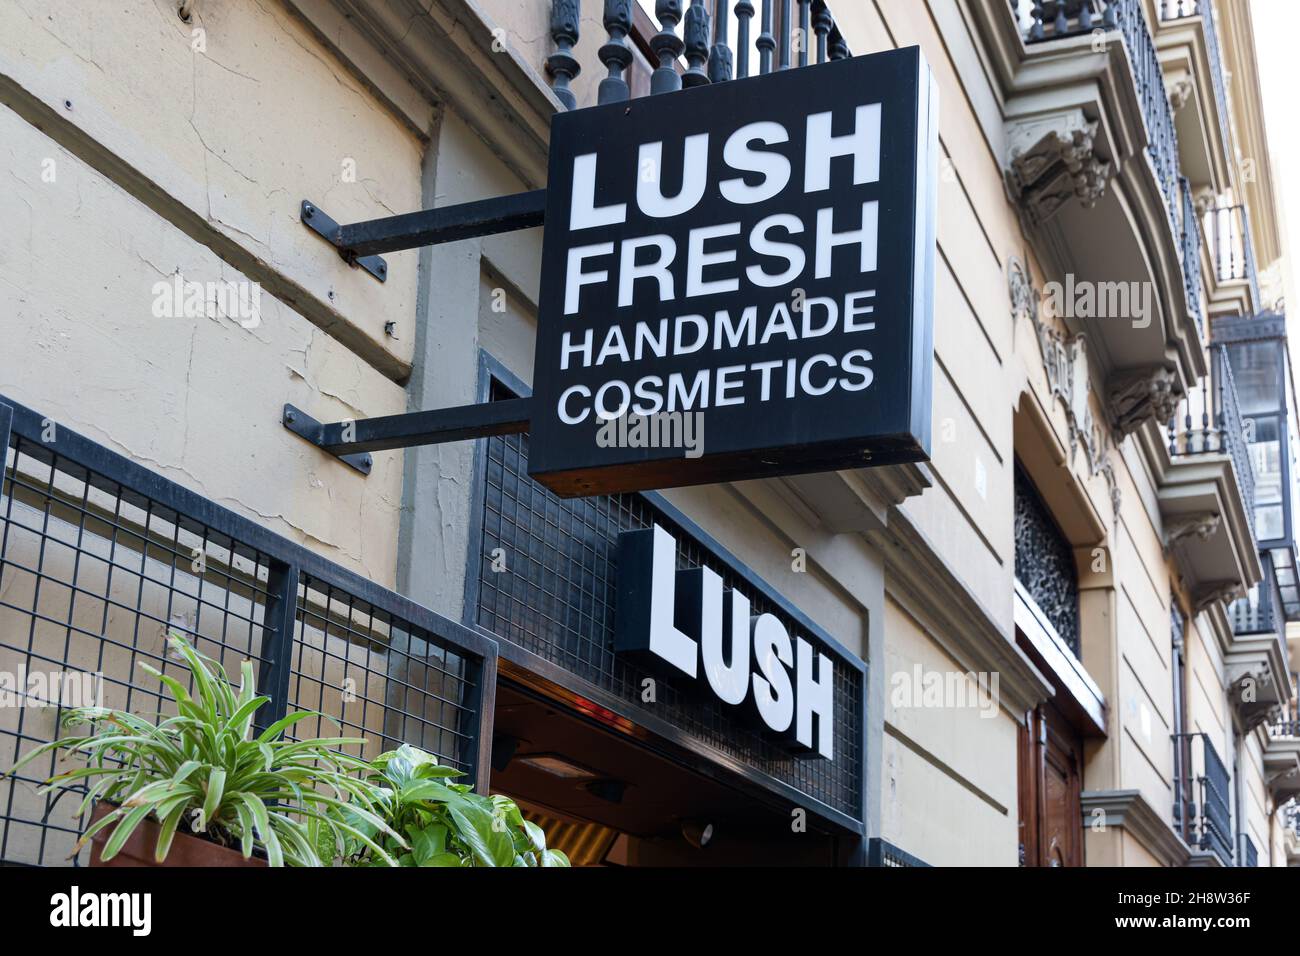 VALENCIA, SPANIEN - 02. DEZEMBER 2021: Lush ist ein britischer Kosmetikhändler, der behauptet, nur vegetarische Rezepte zu verwenden Stockfoto